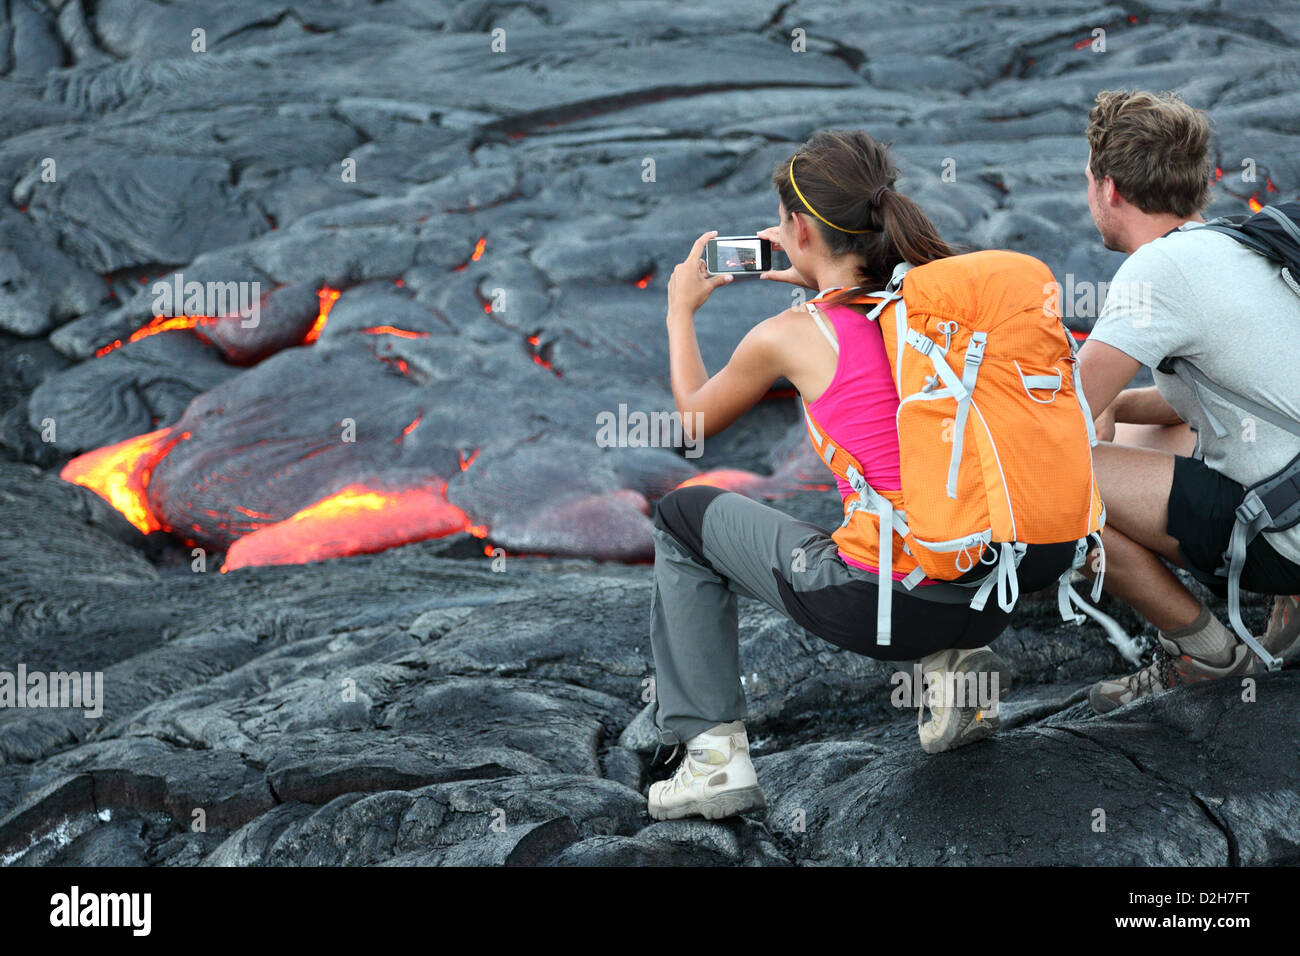 Les touristes de prendre des photos à partir de la lave qui coule autour de volcan Kilauea Hawaii Volcanoes National Park, États-Unis Banque D'Images